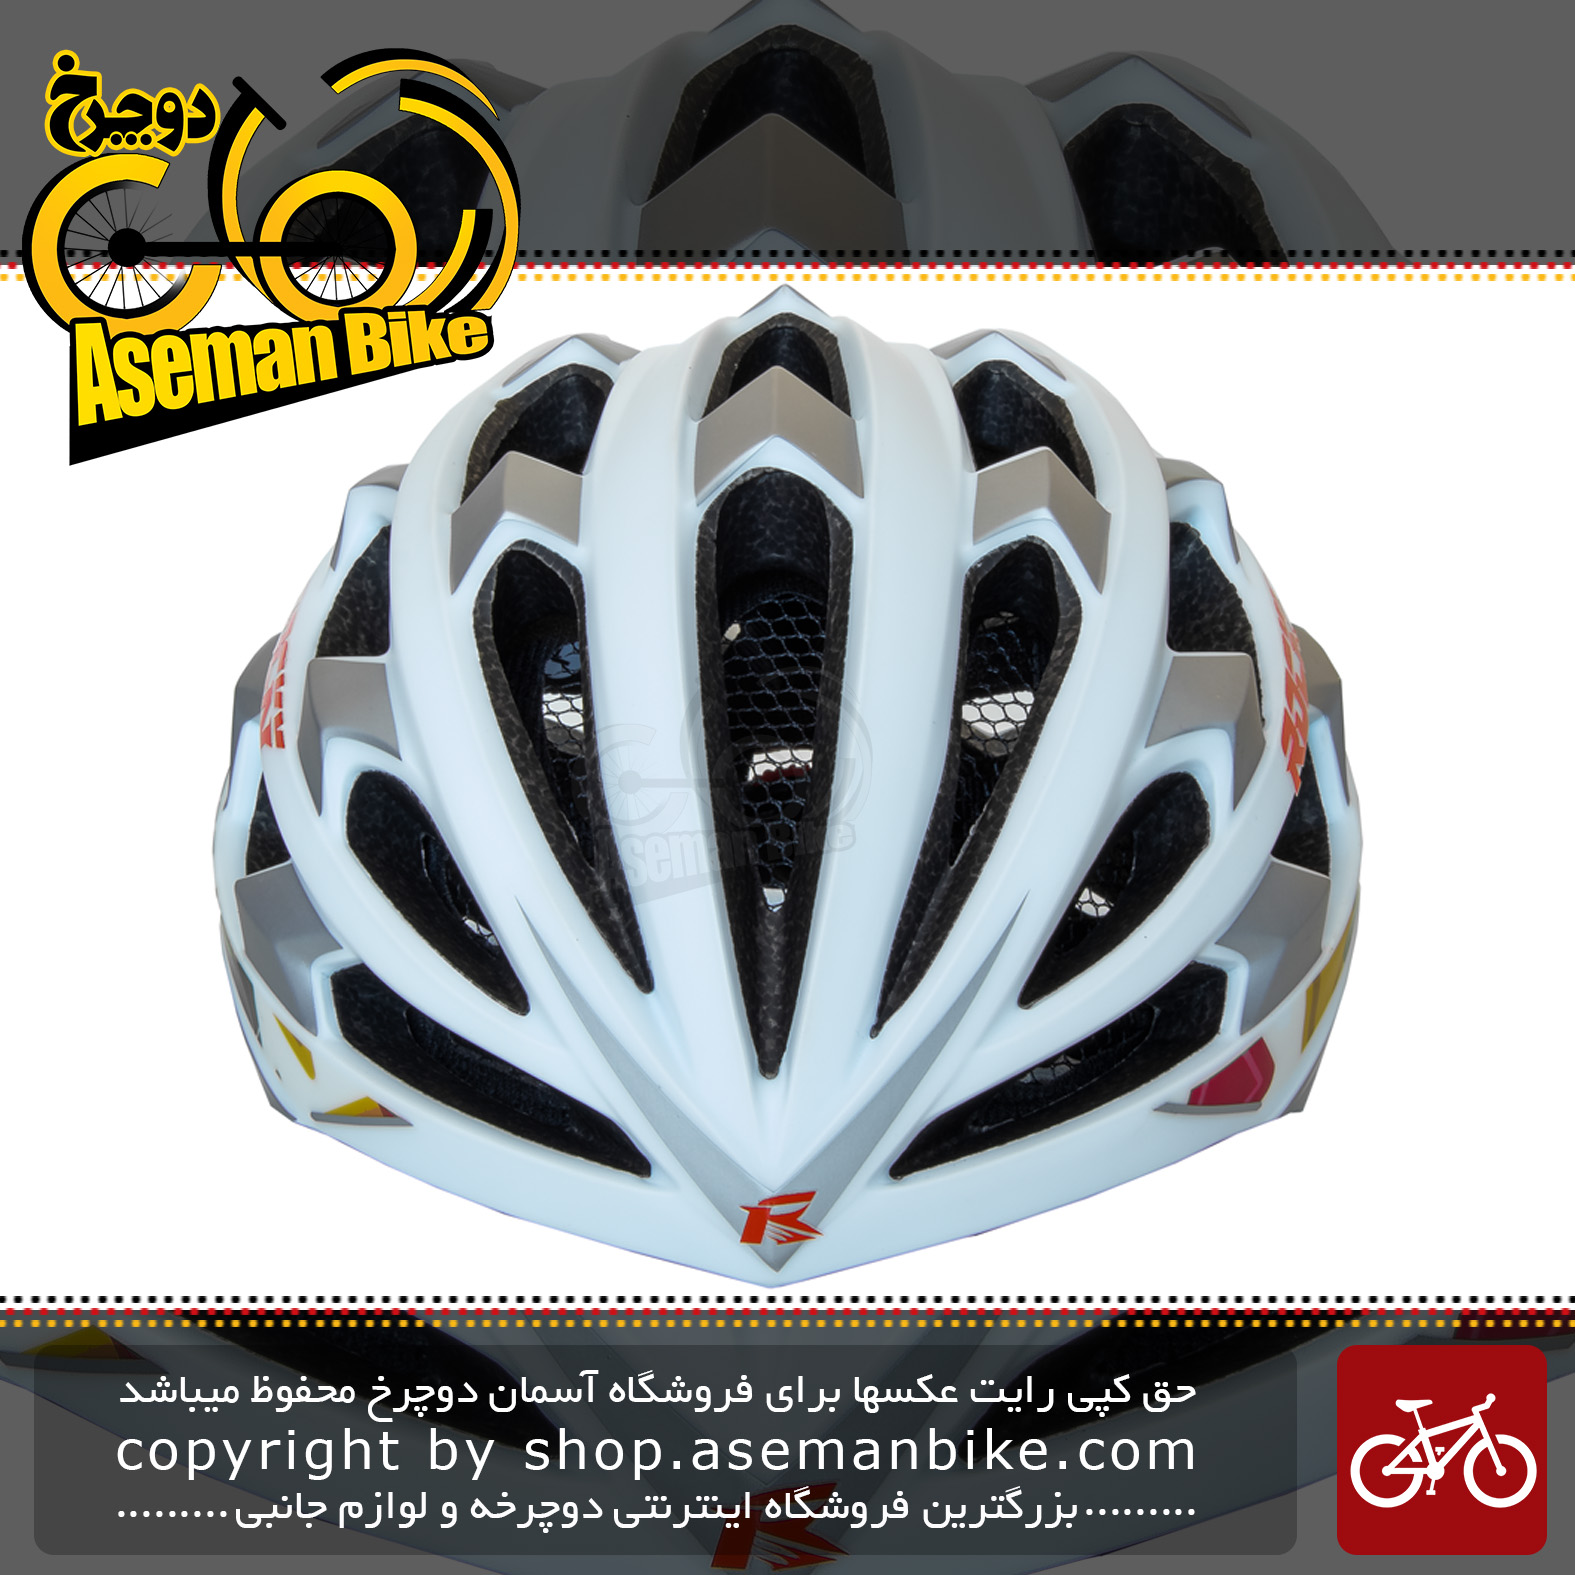 کلاه دوچرخه سواری راکی مدل KS29 سایز لارج رنگ سفید چند رنگ Helmet Bicycle Rocky KS29 Size L White & Multicolor